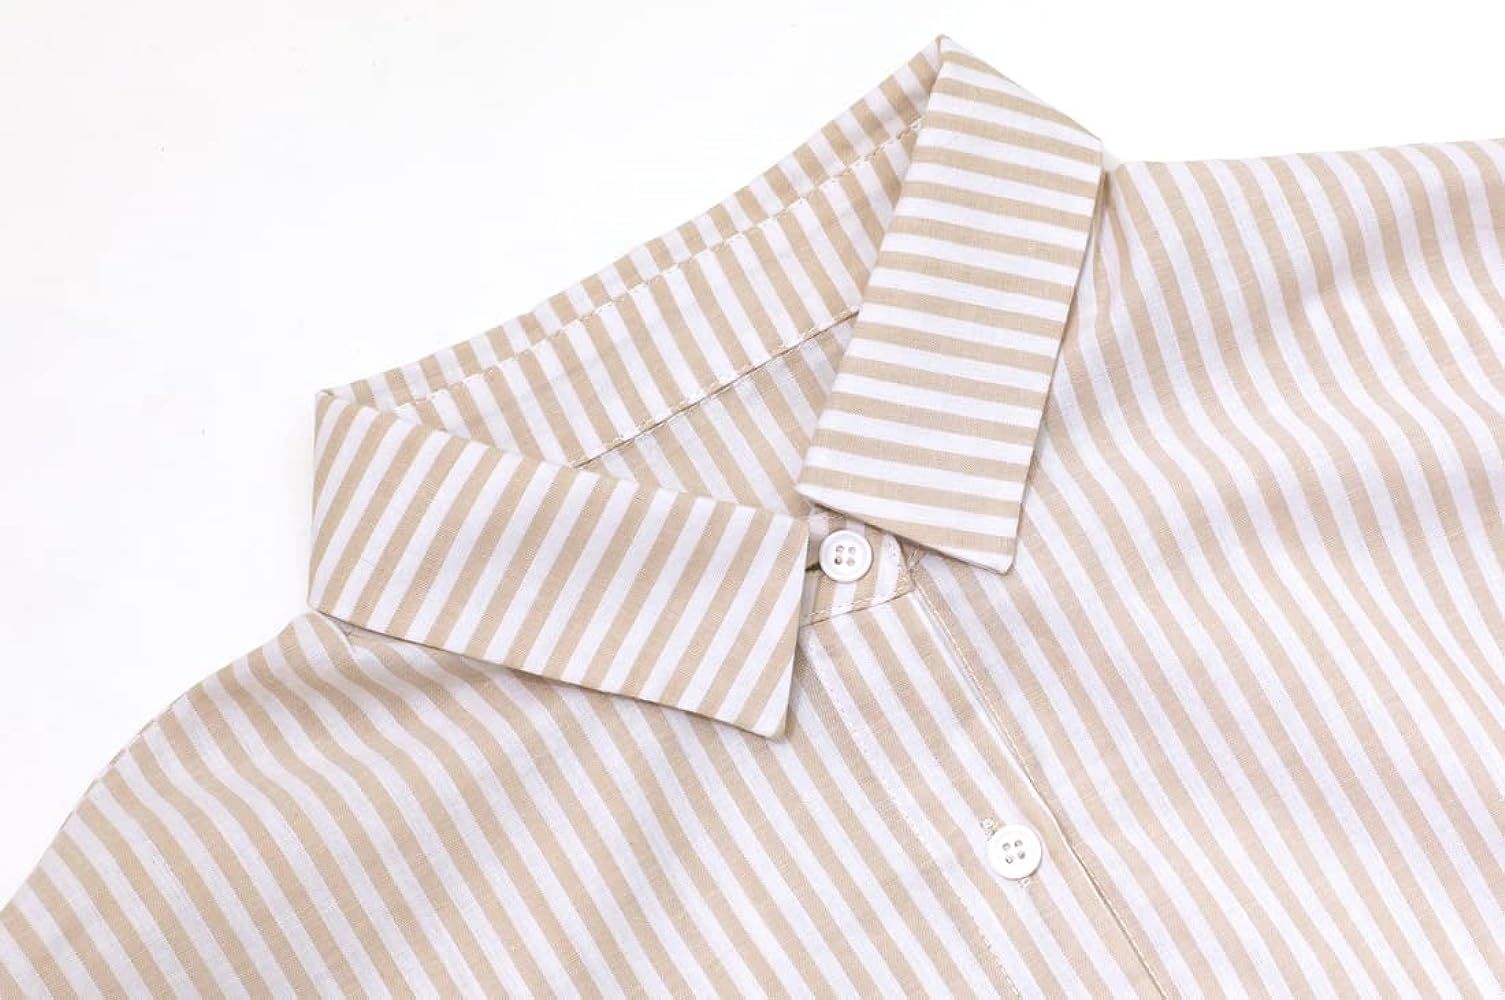 chouyatou Women's Casual Long Sleeve Button Down Loose Striped Cotton Maxi Shirt Dress | Amazon (US)